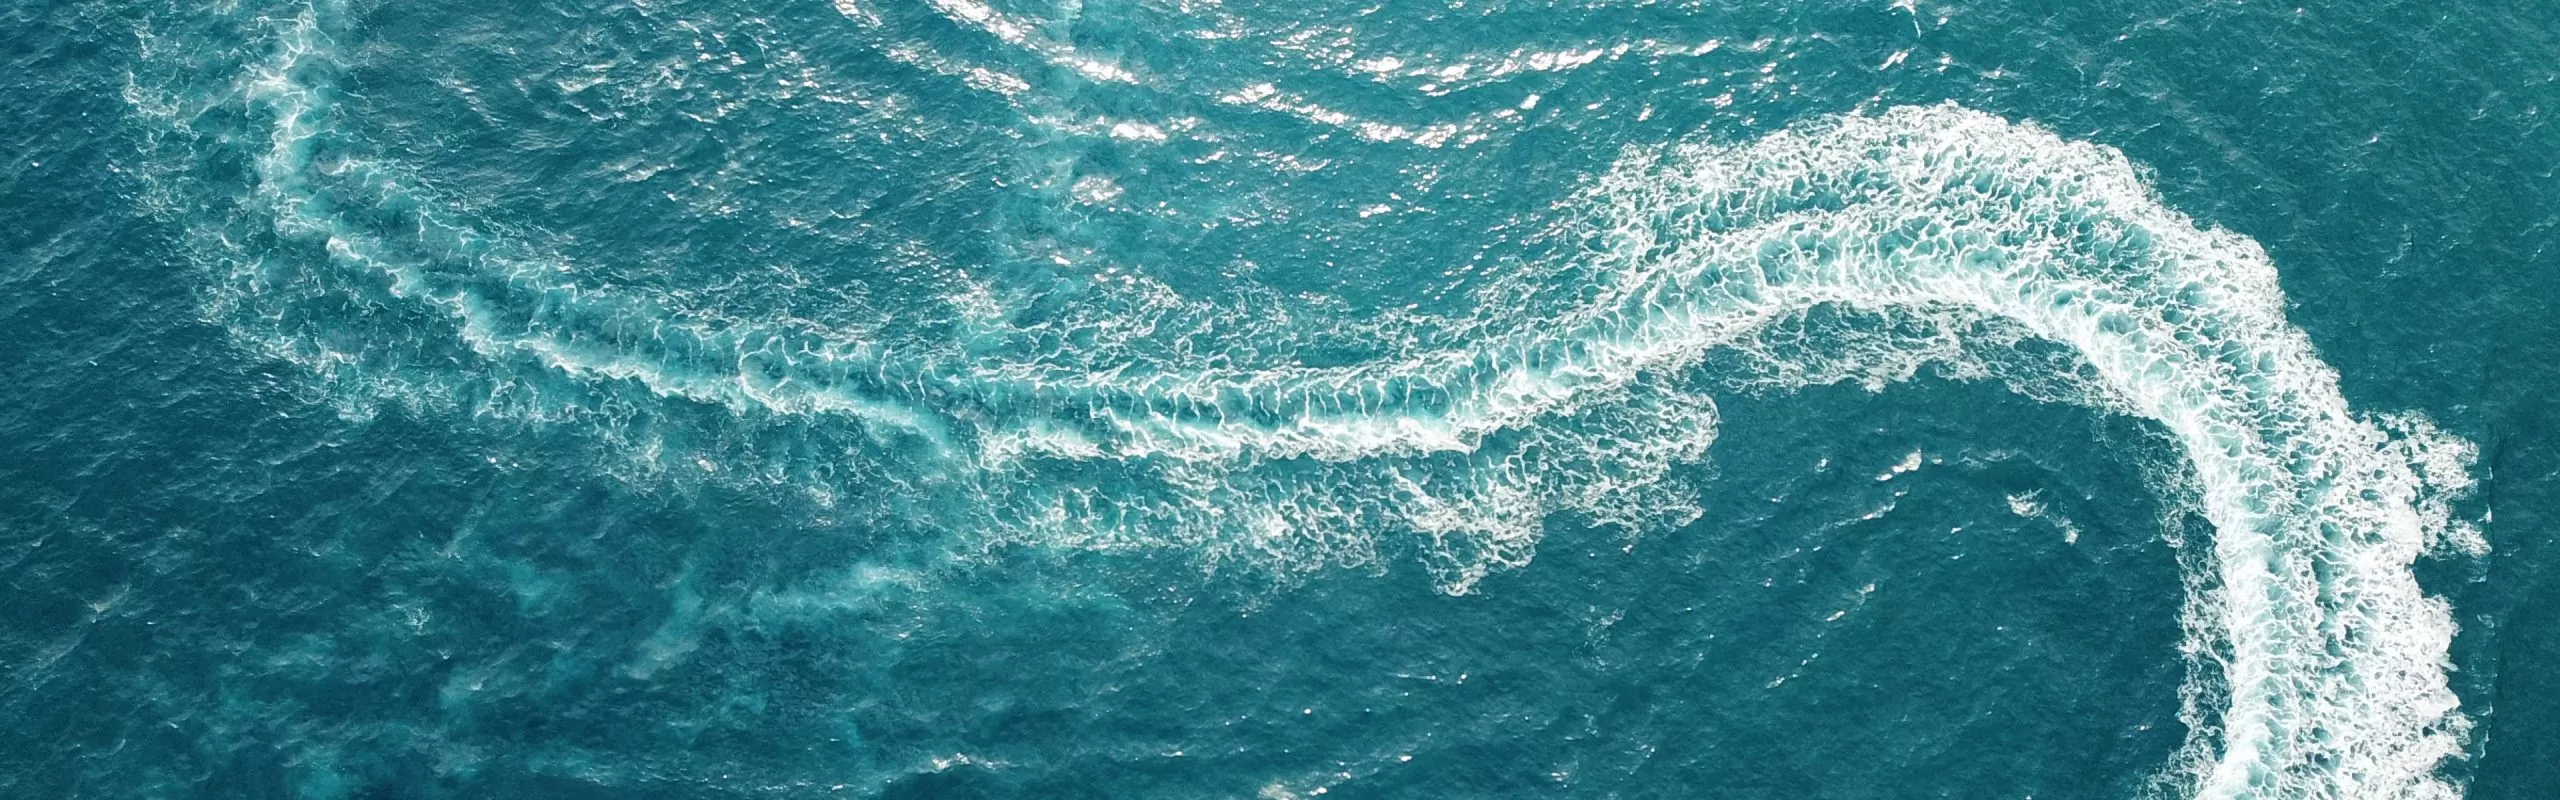 Meerwasser mit Wellen ausgelöst von einer Yacht